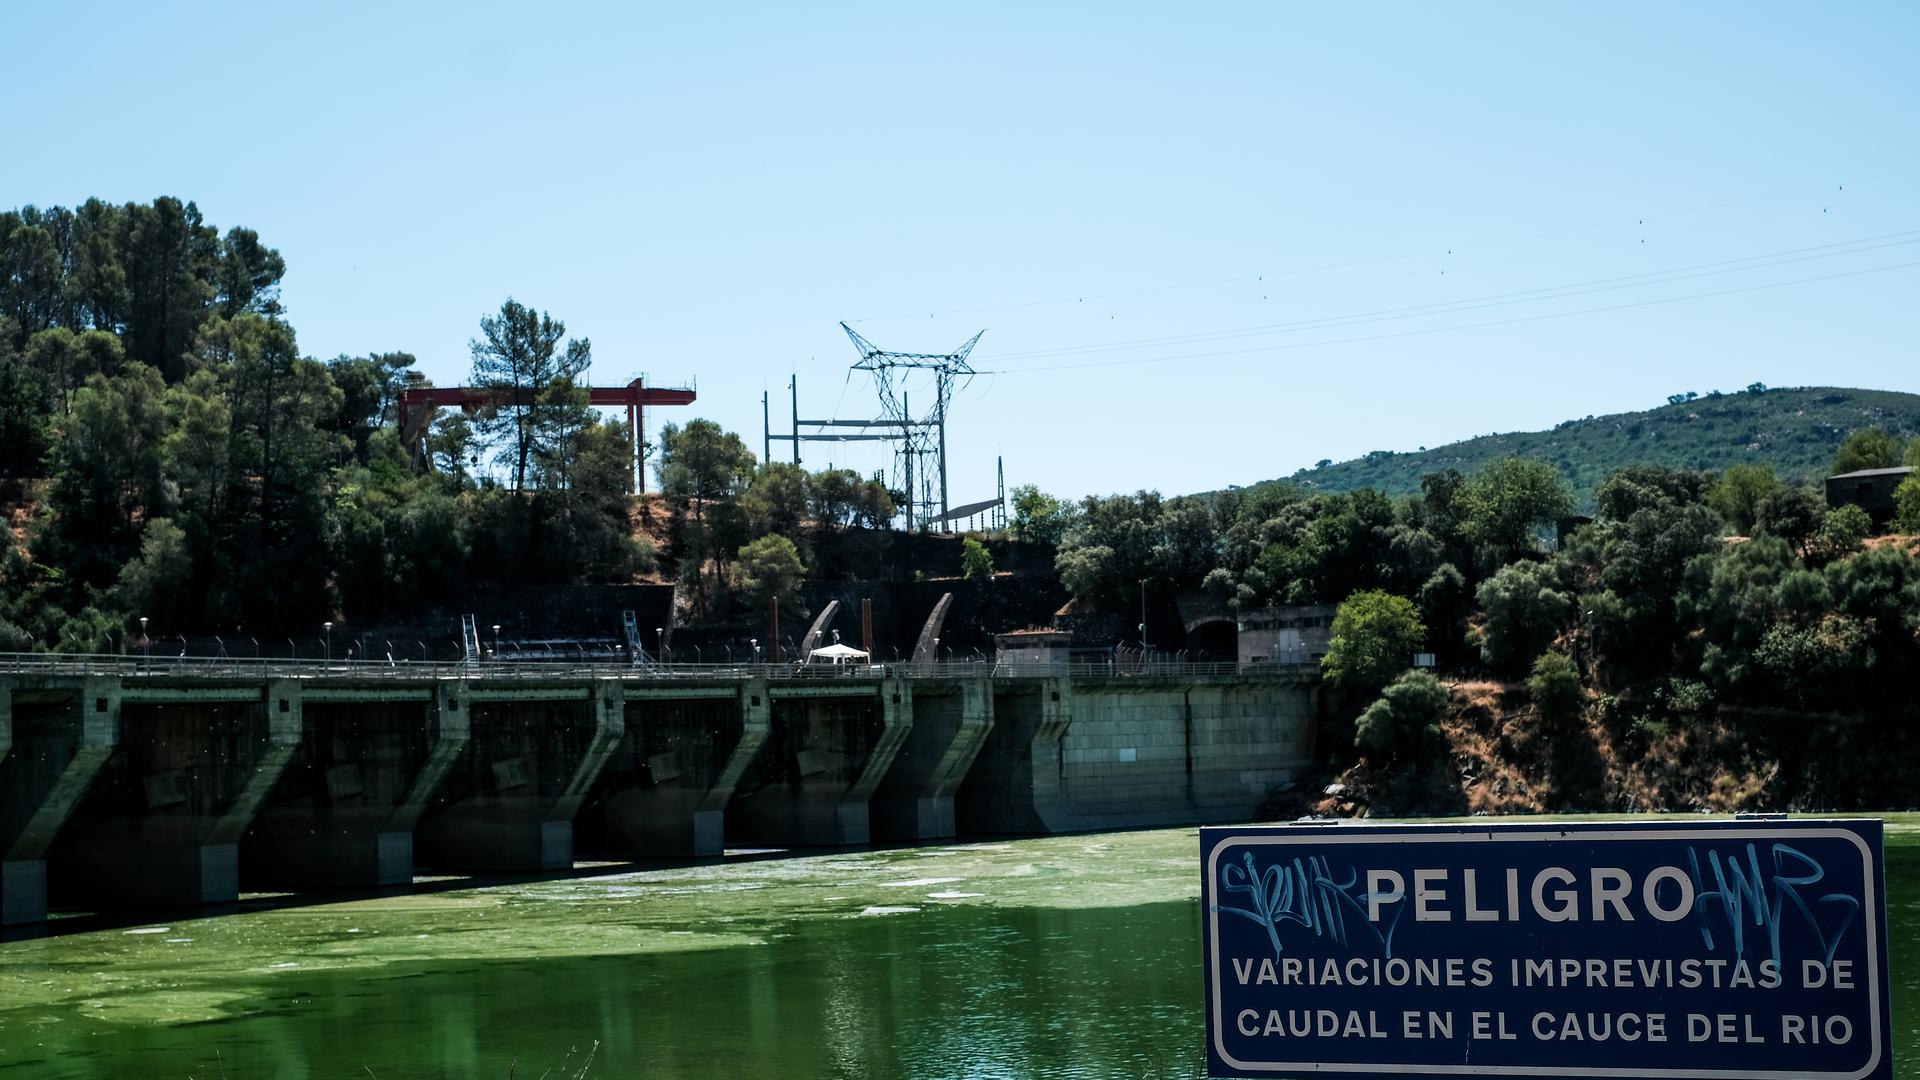 Um aviso das variações do caudal do rio, no Tejo, em Monfragüe.